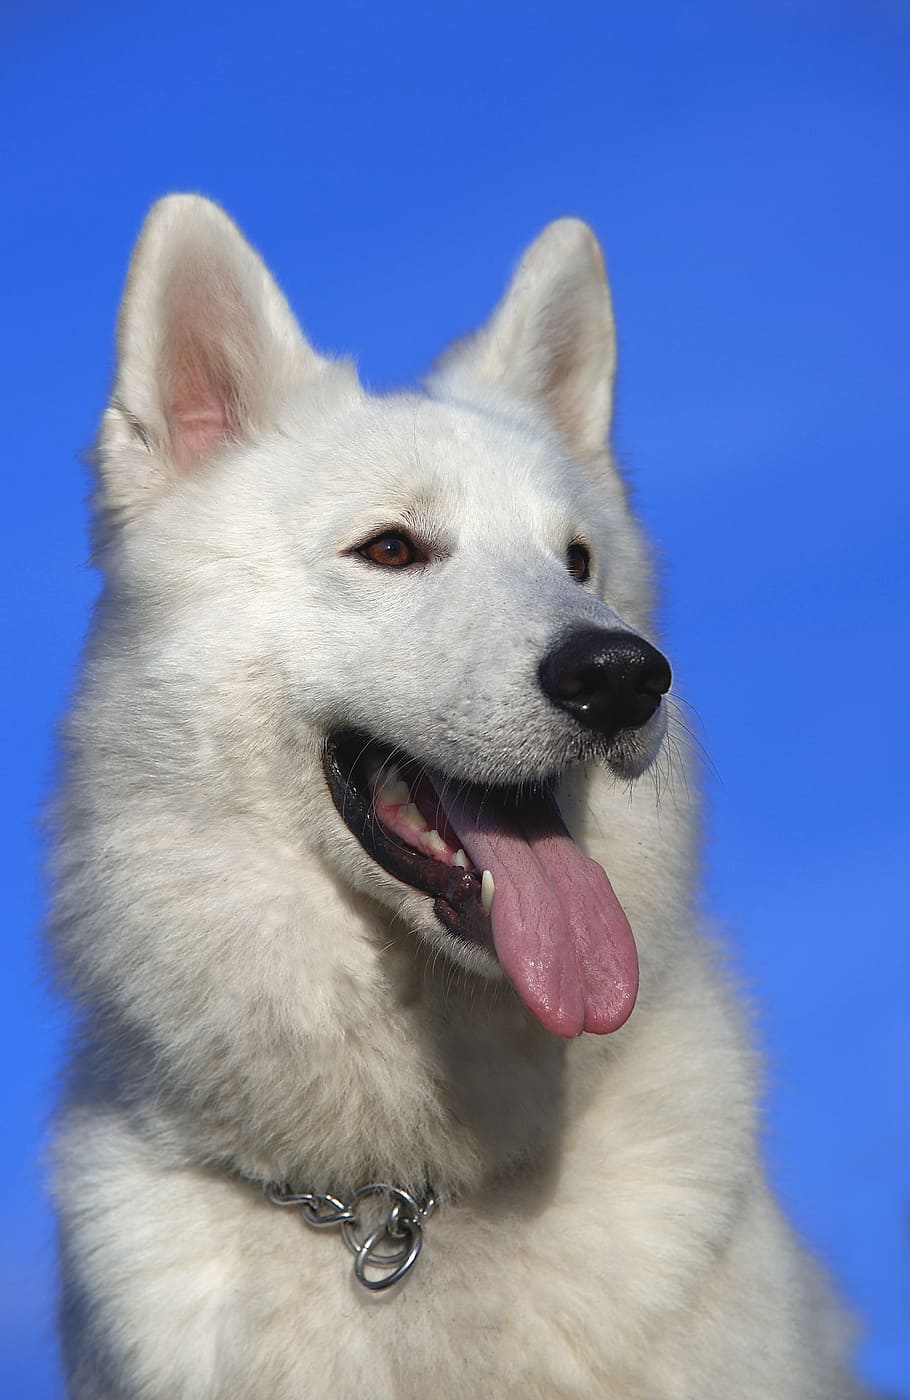 ショートコートの白い犬, スイスの羊飼いの犬, 犬, ペット, 肖像画, 頭, 動物, 動物の肖像画, 白, 純血種の犬